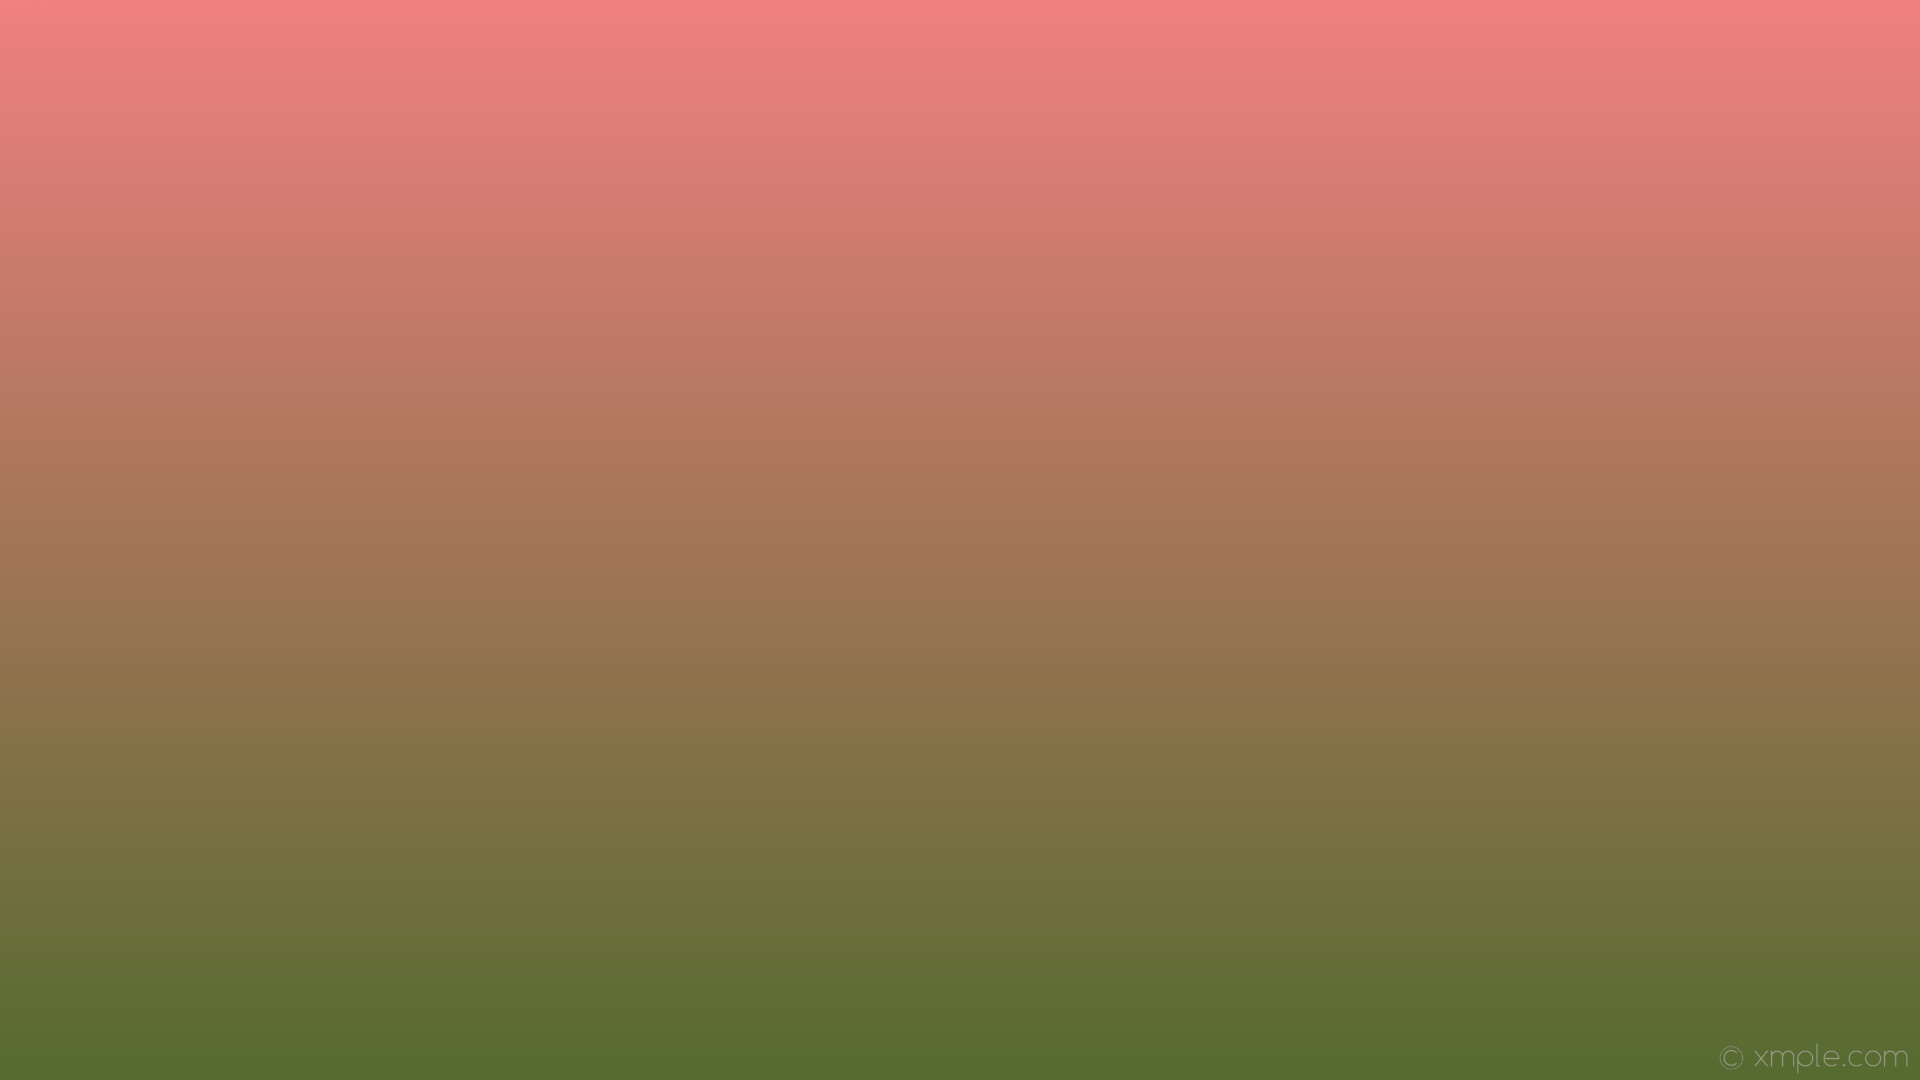 1920x1080 wallpaper red green gradient linear light coral dark olive green #f08080  #556b2f 90Â°